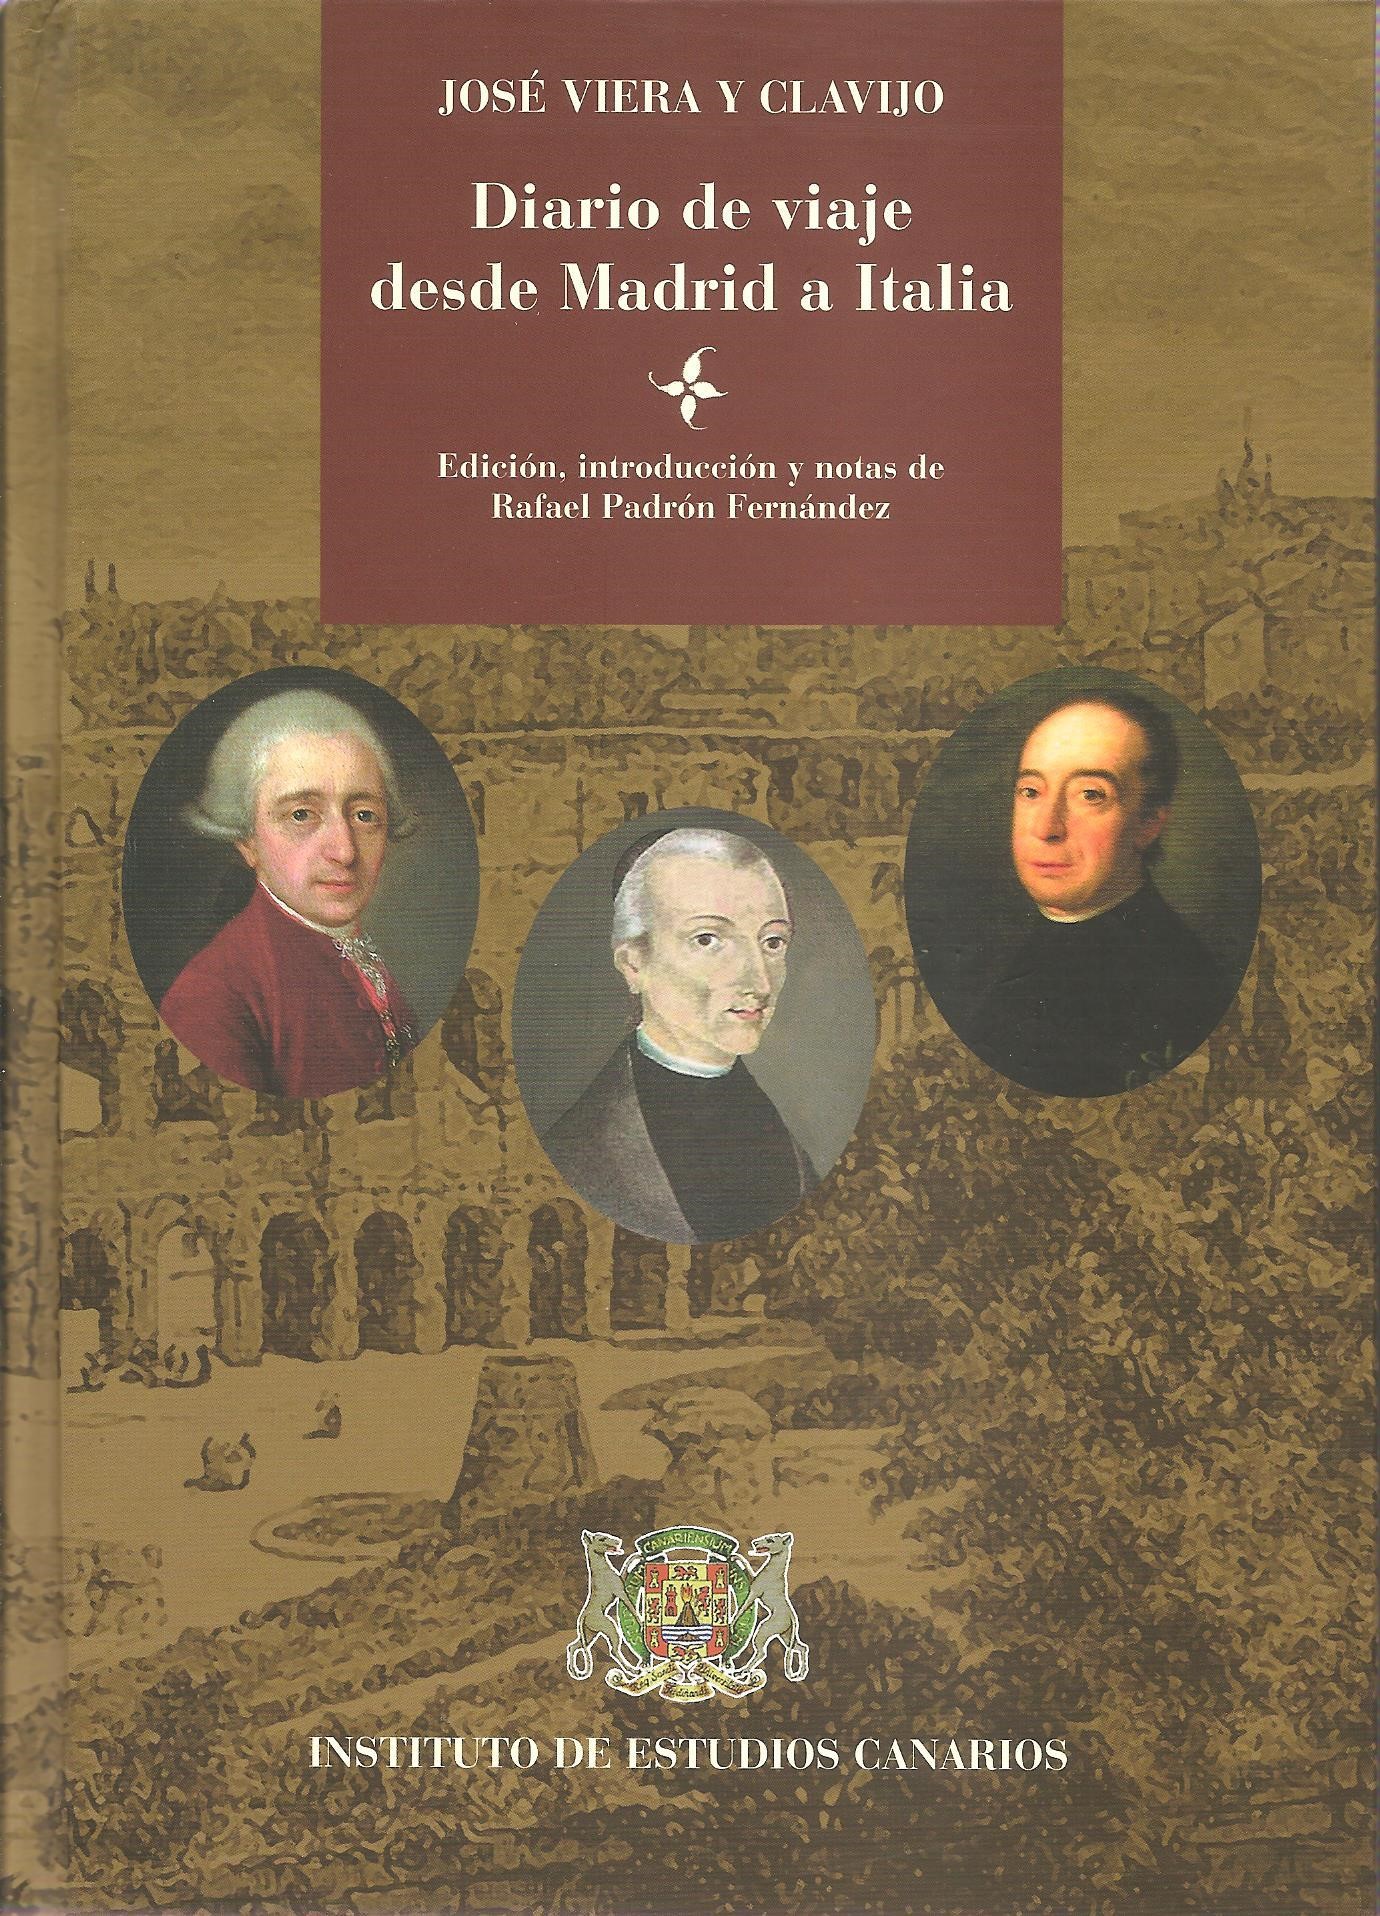 Imagen de portada del libro Diario de viaje desde Madrid a Italia